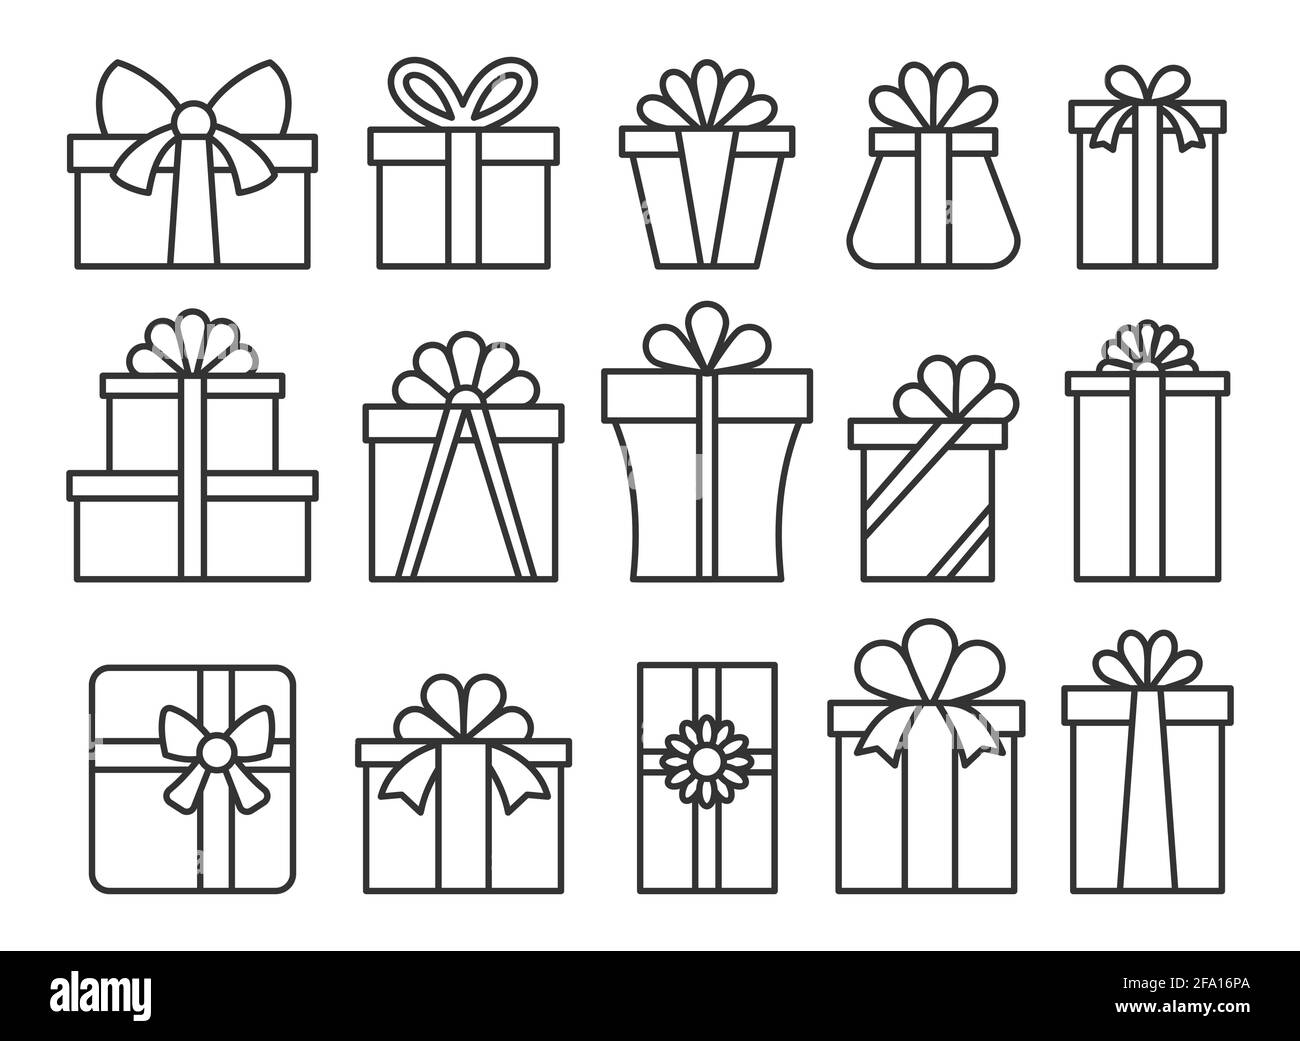 Geschenkbox Linie Symbol Set. Einfache Outline geschenkbox mit Schleife  Piktogramm-Pack. Alles gute zum Geburtstag, frohe weihnachten, Neujahr  Geschenk-Paket-Symbol. Feiertagsfeier Valentinstag Überraschung Paket  Zeichen Stock-Vektorgrafik - Alamy